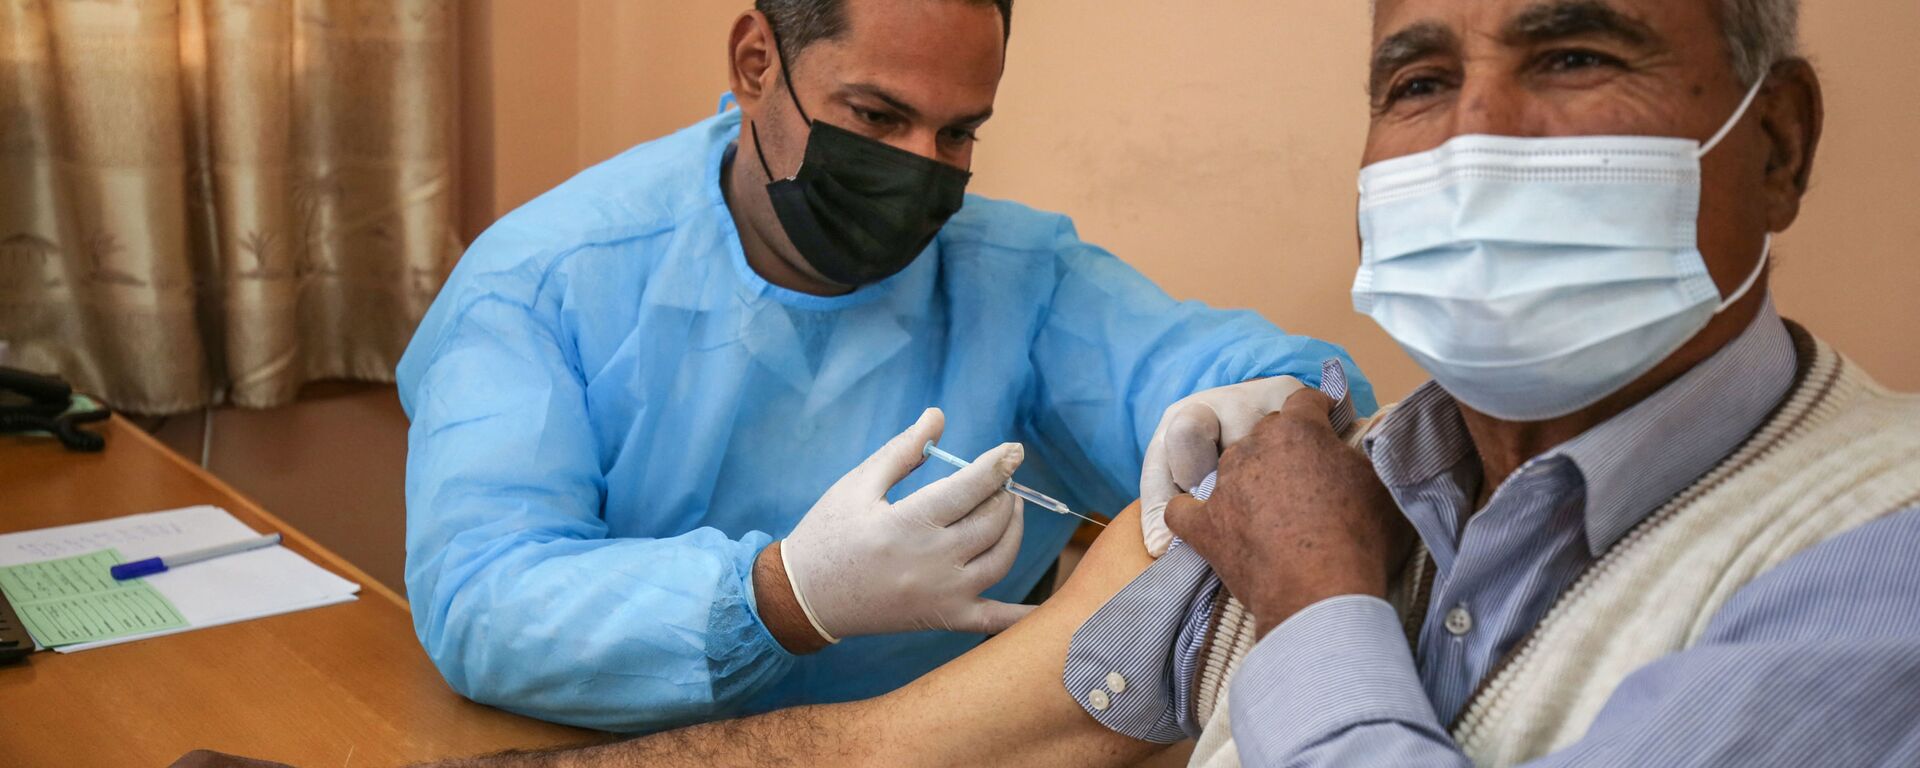 التطعيم بلقاح سبوتنيك V الروسي ضد فيروس كورونا (كوفيد-19)، مدينة غزة، قطاع غزة، فلسطين، 3 مارس 2021 - سبوتنيك عربي, 1920, 24.03.2021